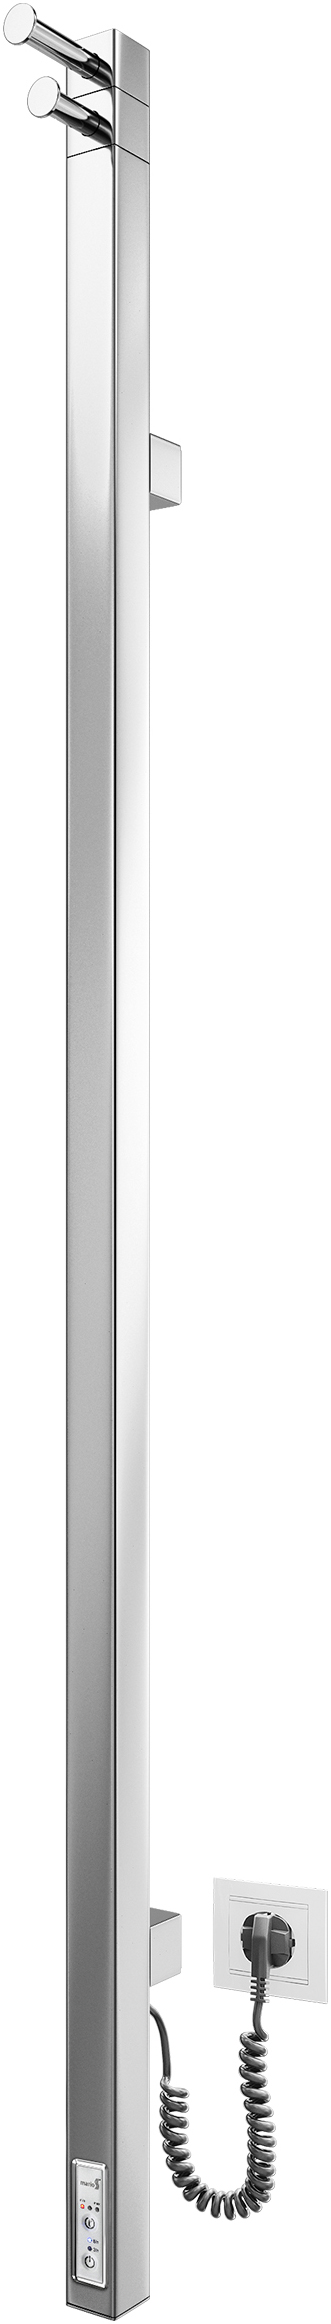 Полотенцесушитель с квадратным профилем Mario Рэй Кубо-I 1100х30/130 таймер с регулятором TR